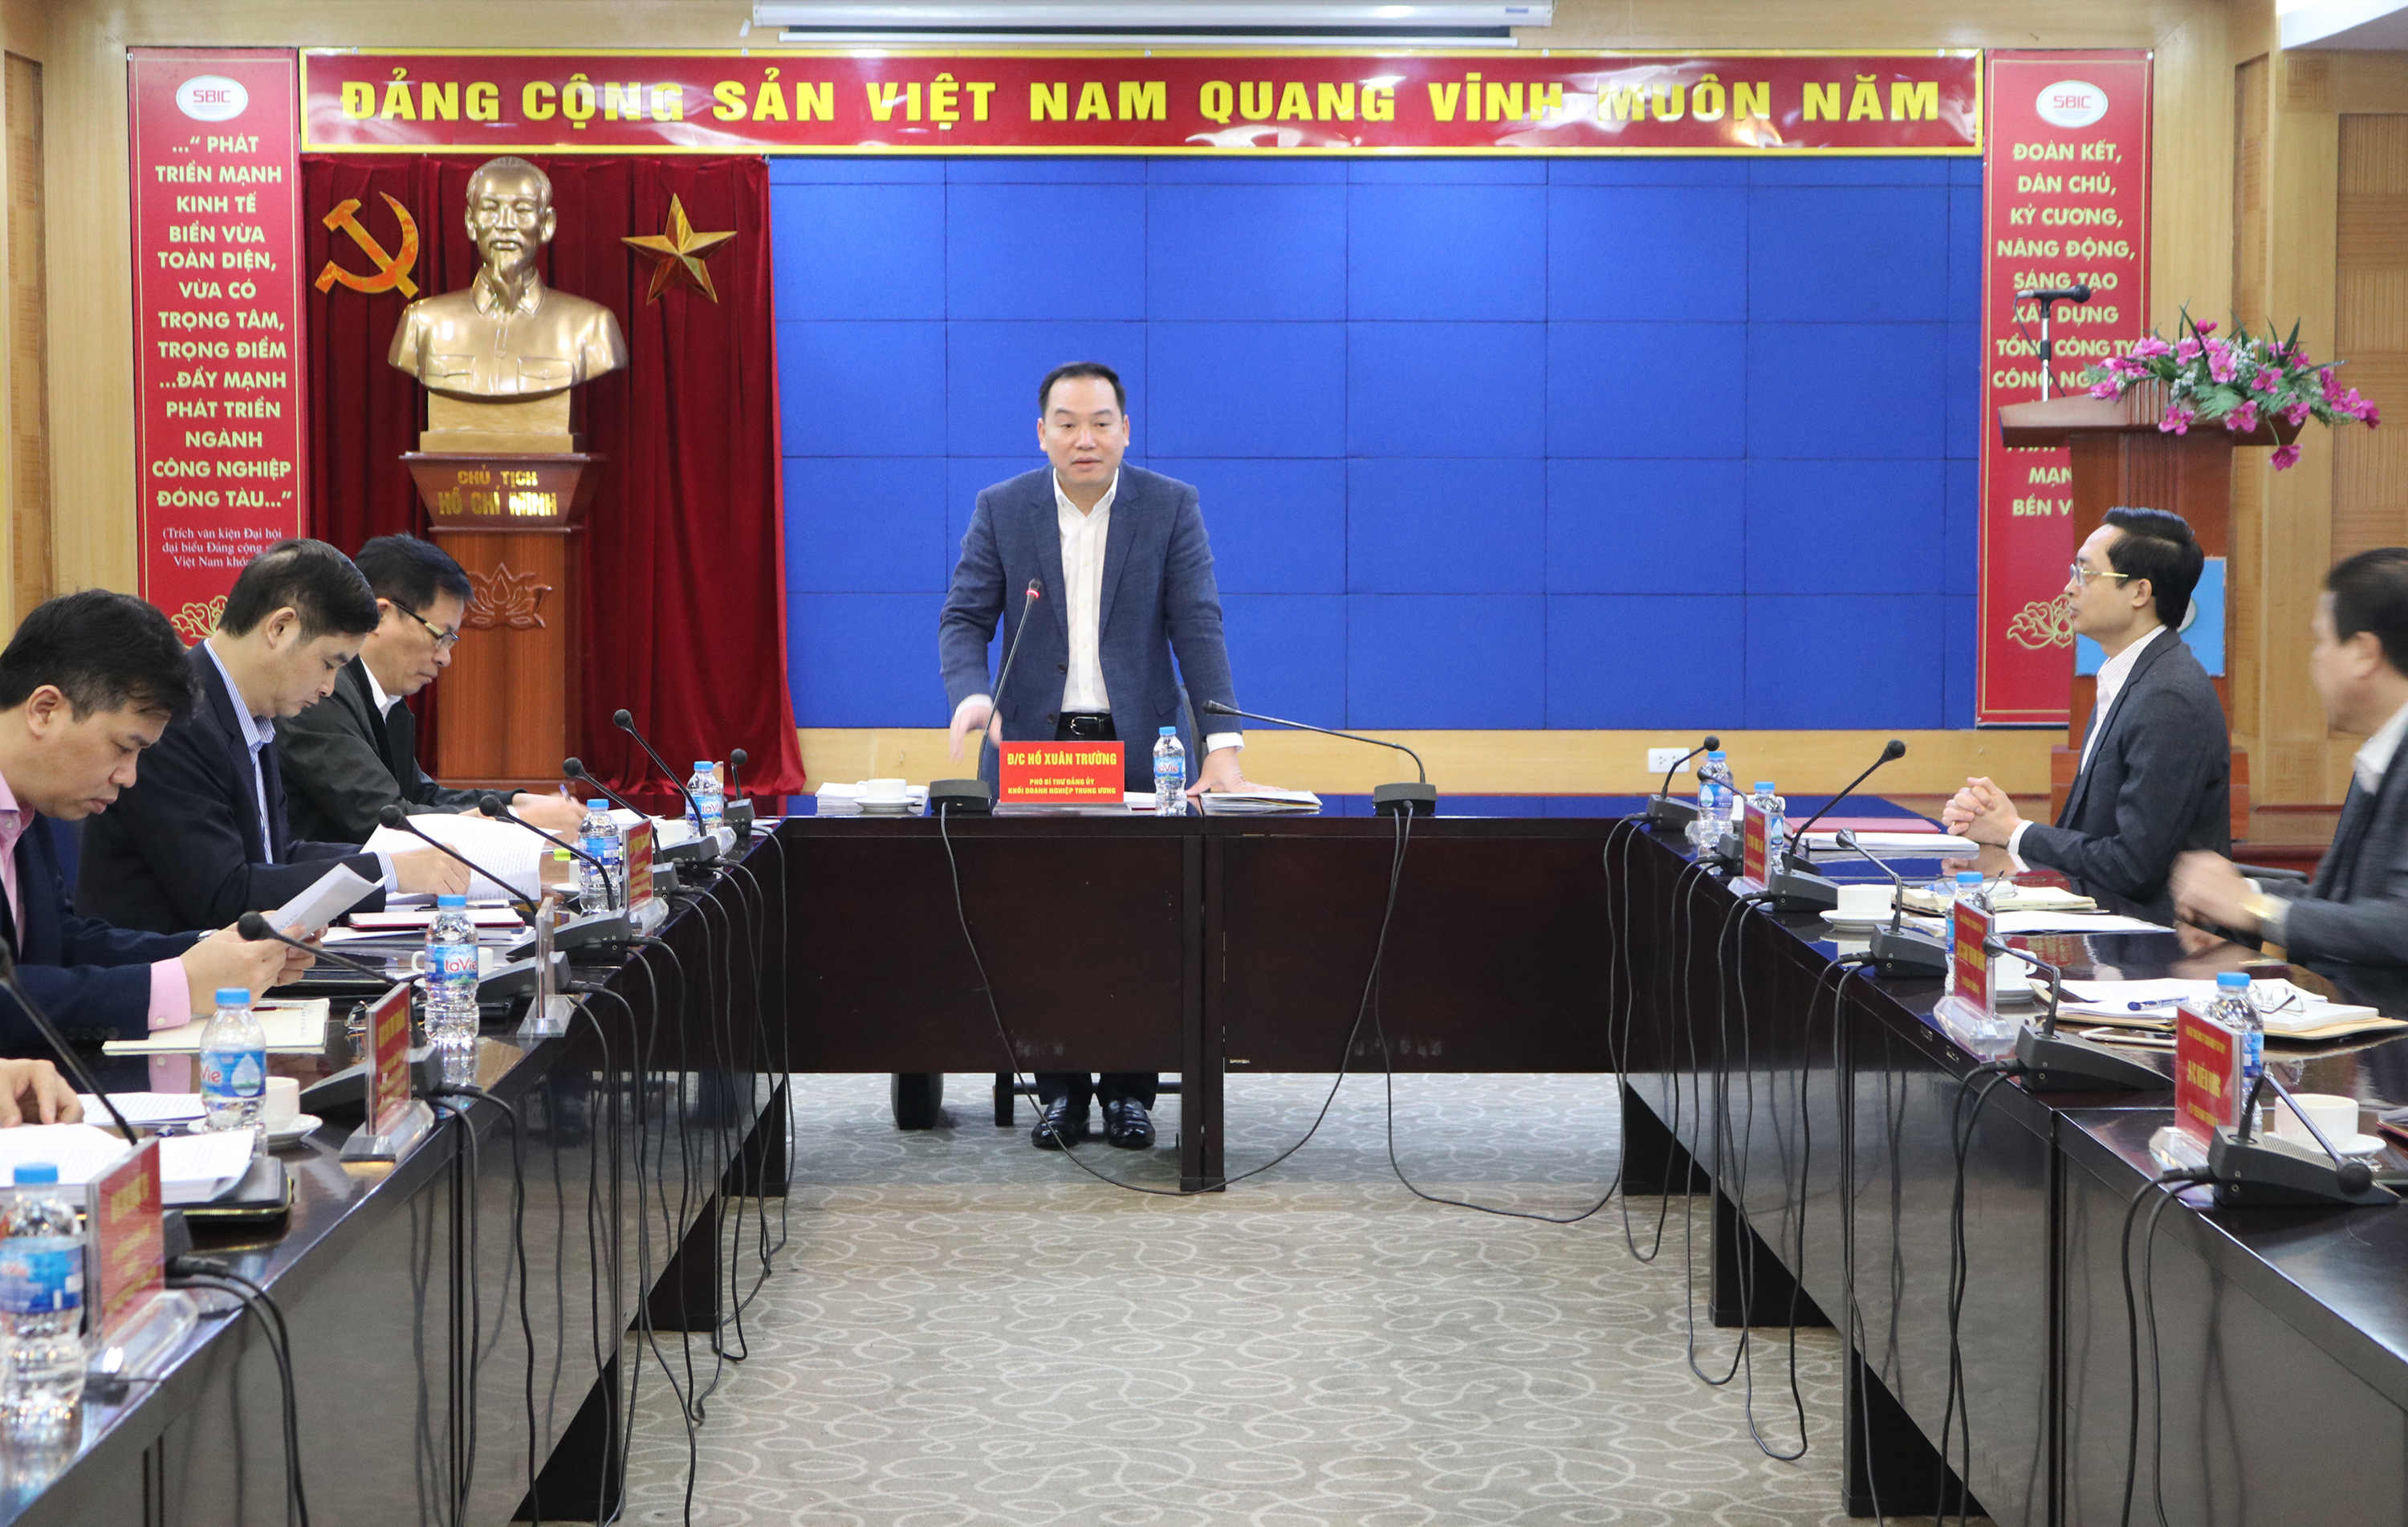 Đồng chí Hồ Xuân Trường, Phó Bí thư Đảng ủy Khối Doanh nghiệp Trung ương phát biểu tại buổi làm việc.